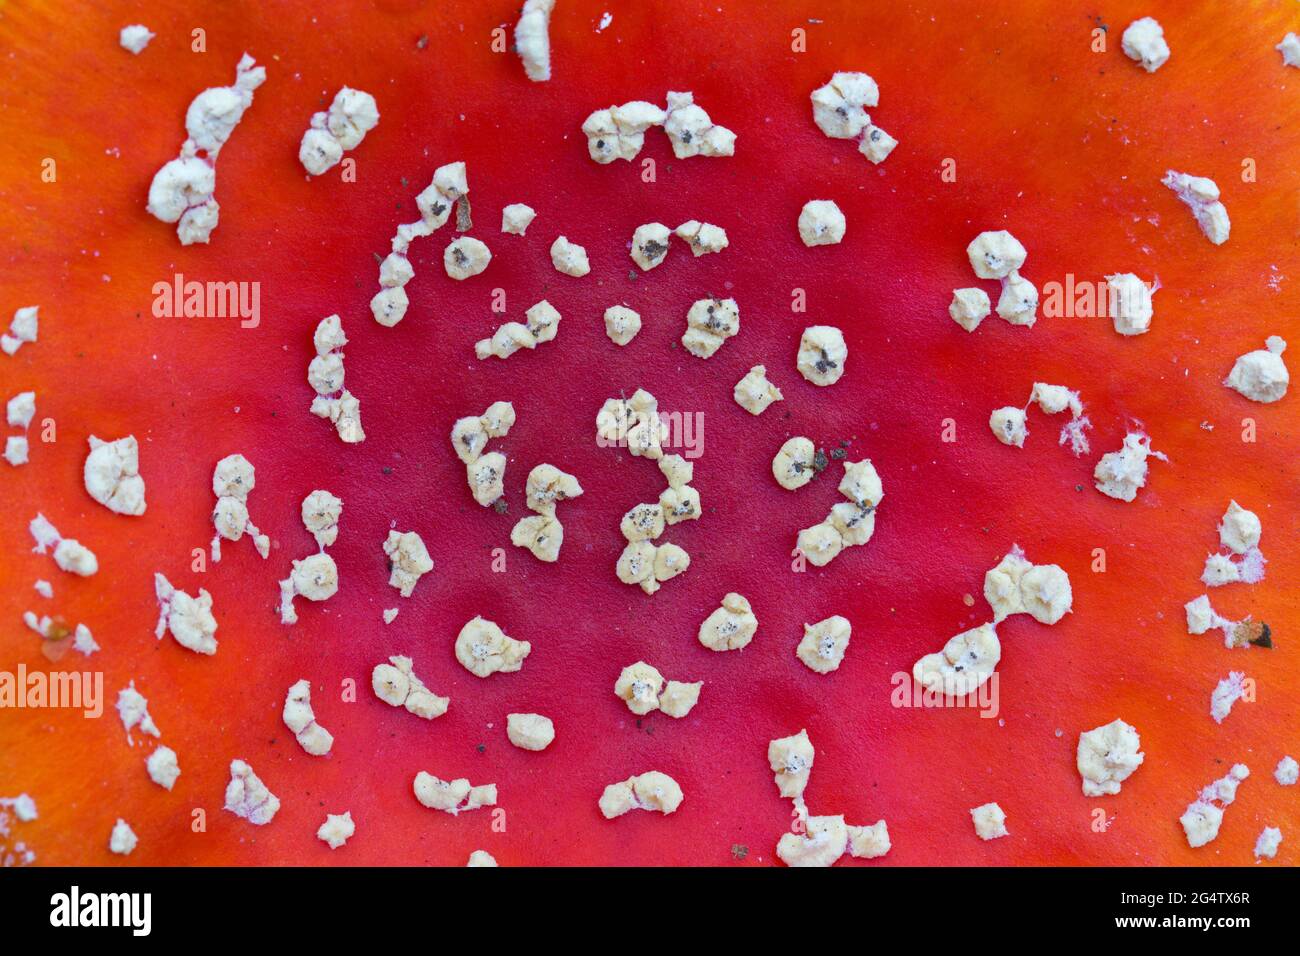 Nahaufnahme der roten Kappe des Fliegenpilzes/Fliegenpilzes (Amanita muscaria) mit weißen Flecken, pyramidenförmigen Warzen, Überresten des universellen Schleiers Stockfoto